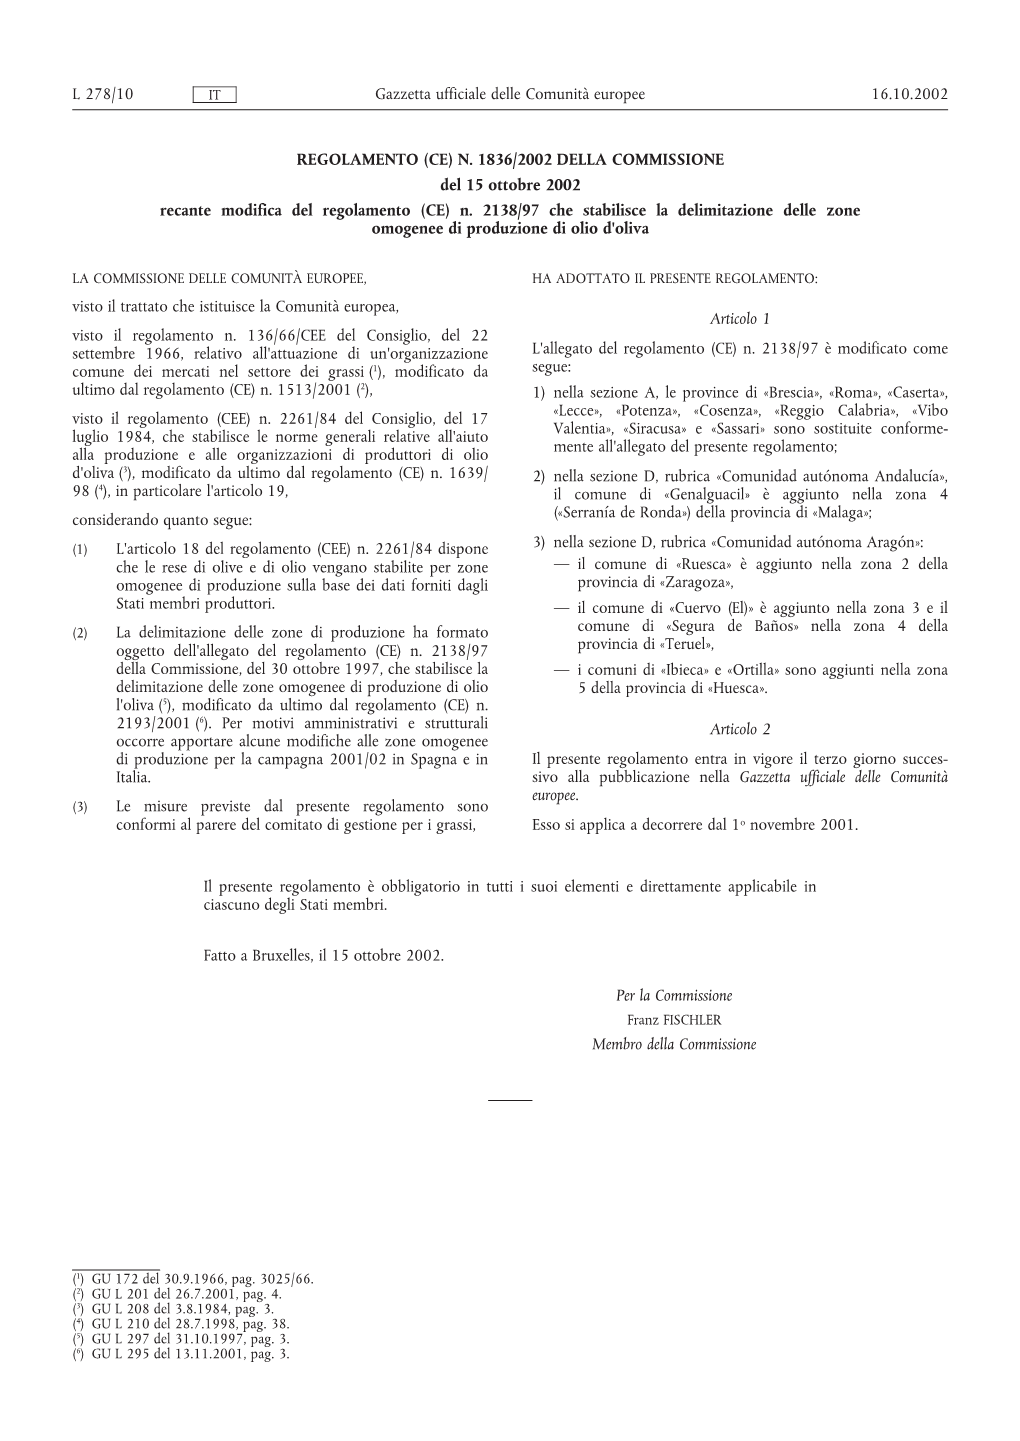 REGOLAMENTO (CE) N. 1836/2002 DELLA COMMISSIONE Del 15 Ottobre 2002 Recante Modifica Del Regolamento (CE) N